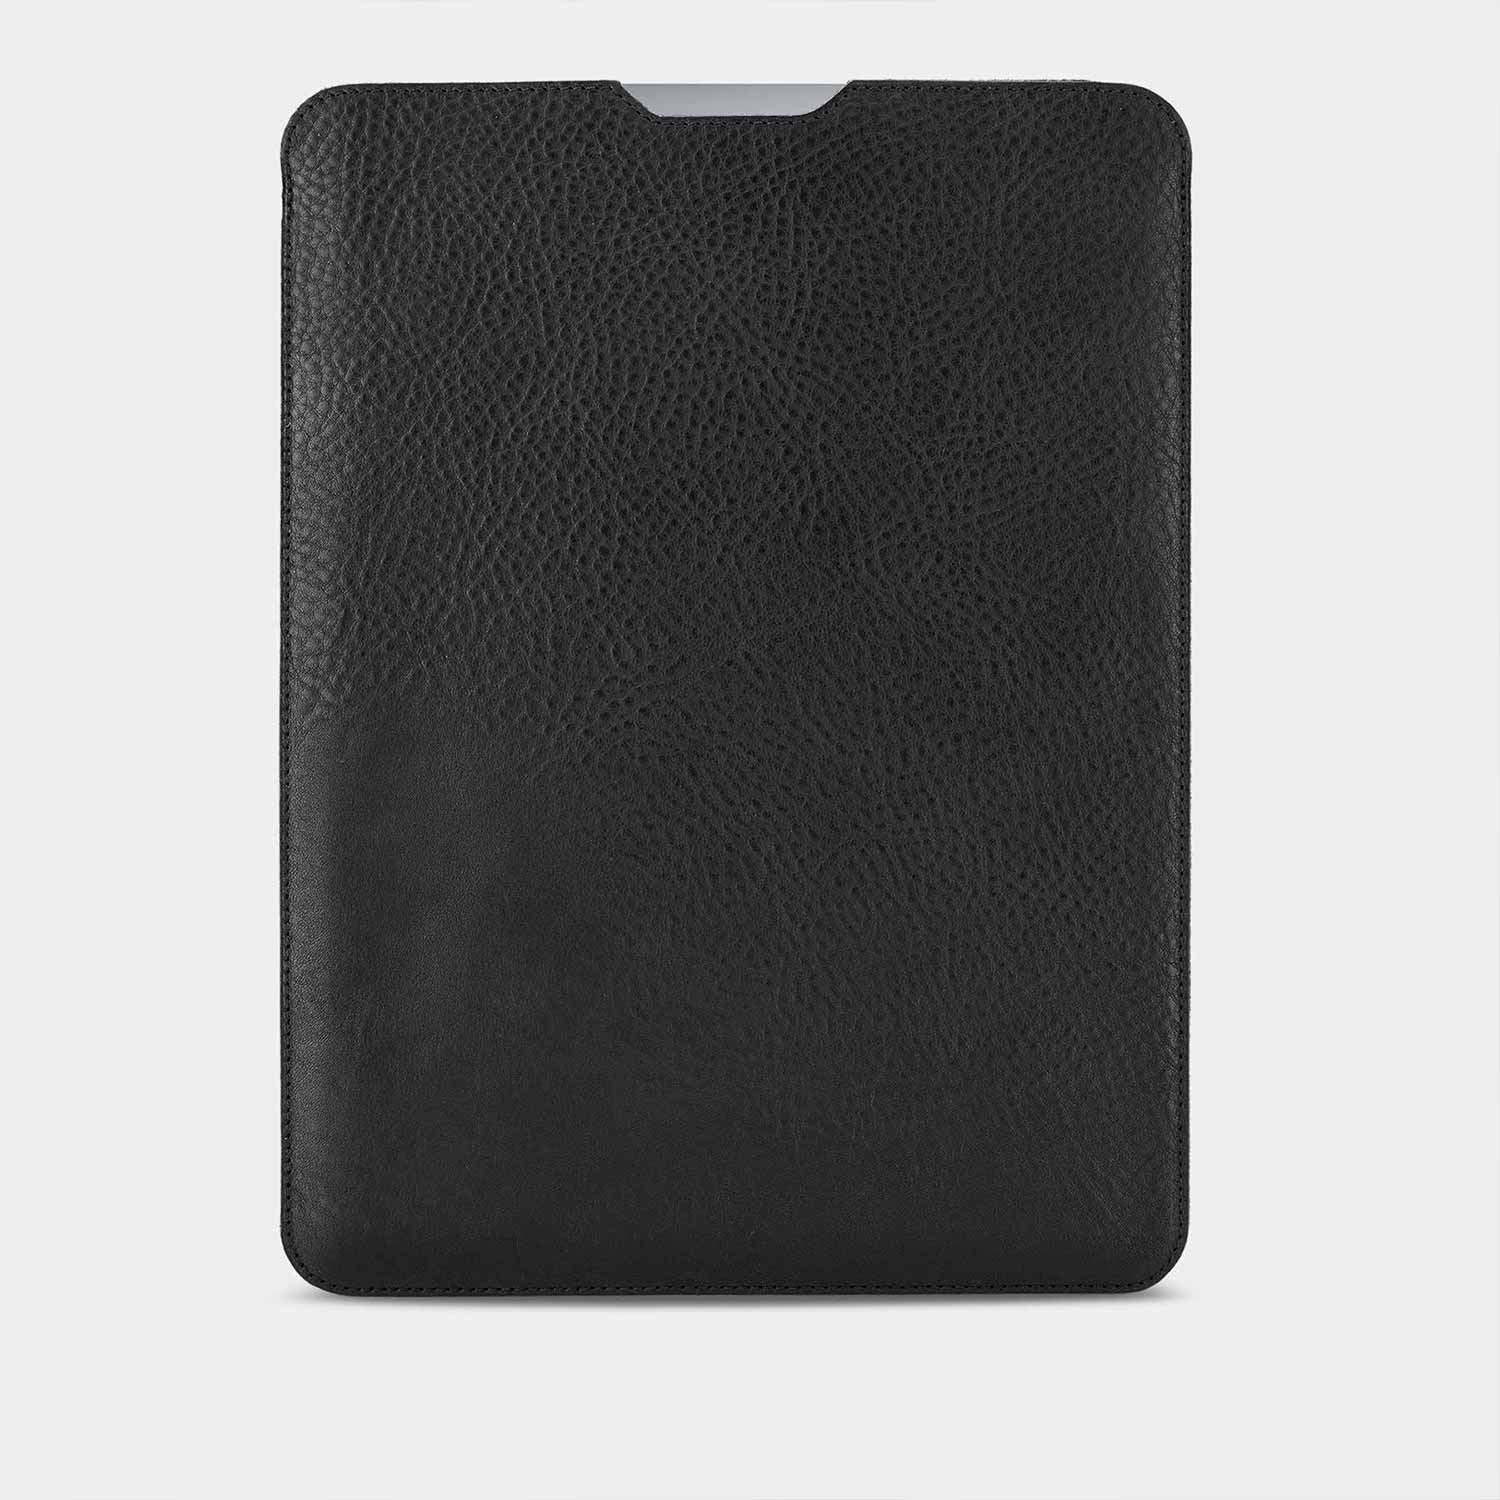 MacBook Sleeve HENRY von Goodwilhelm in der Farbe black